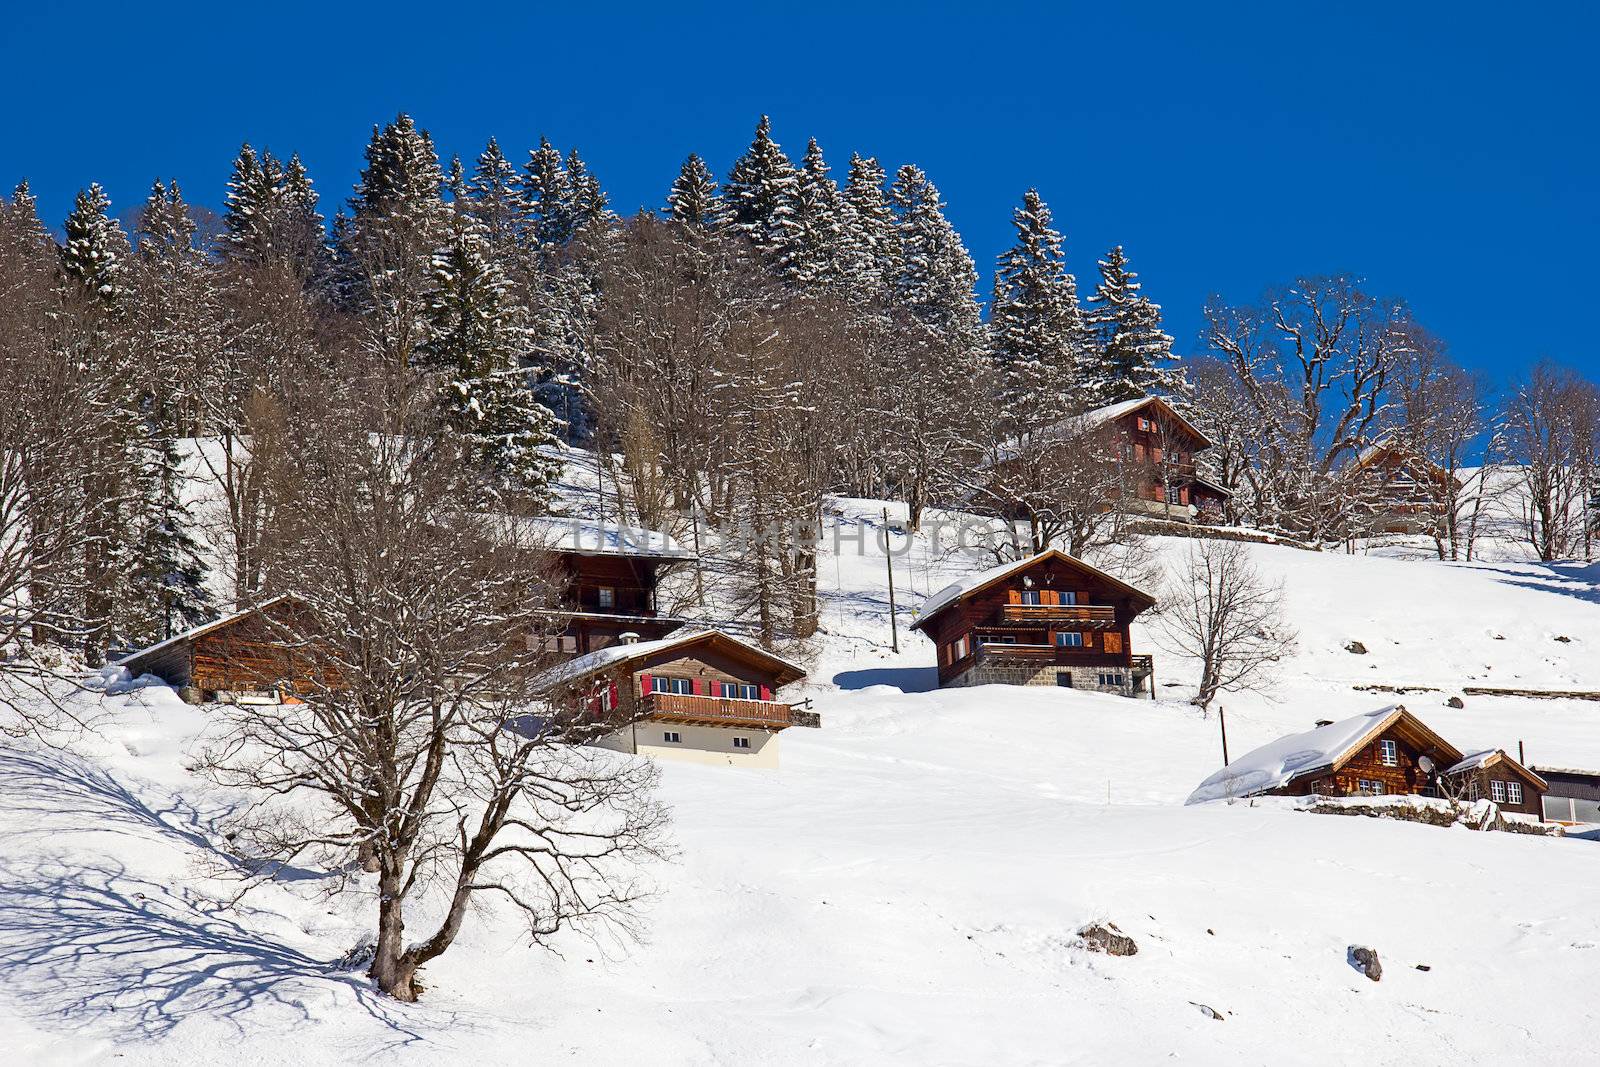 Winter in the swiss alps (Braunwald, Glarus, Switzerland)